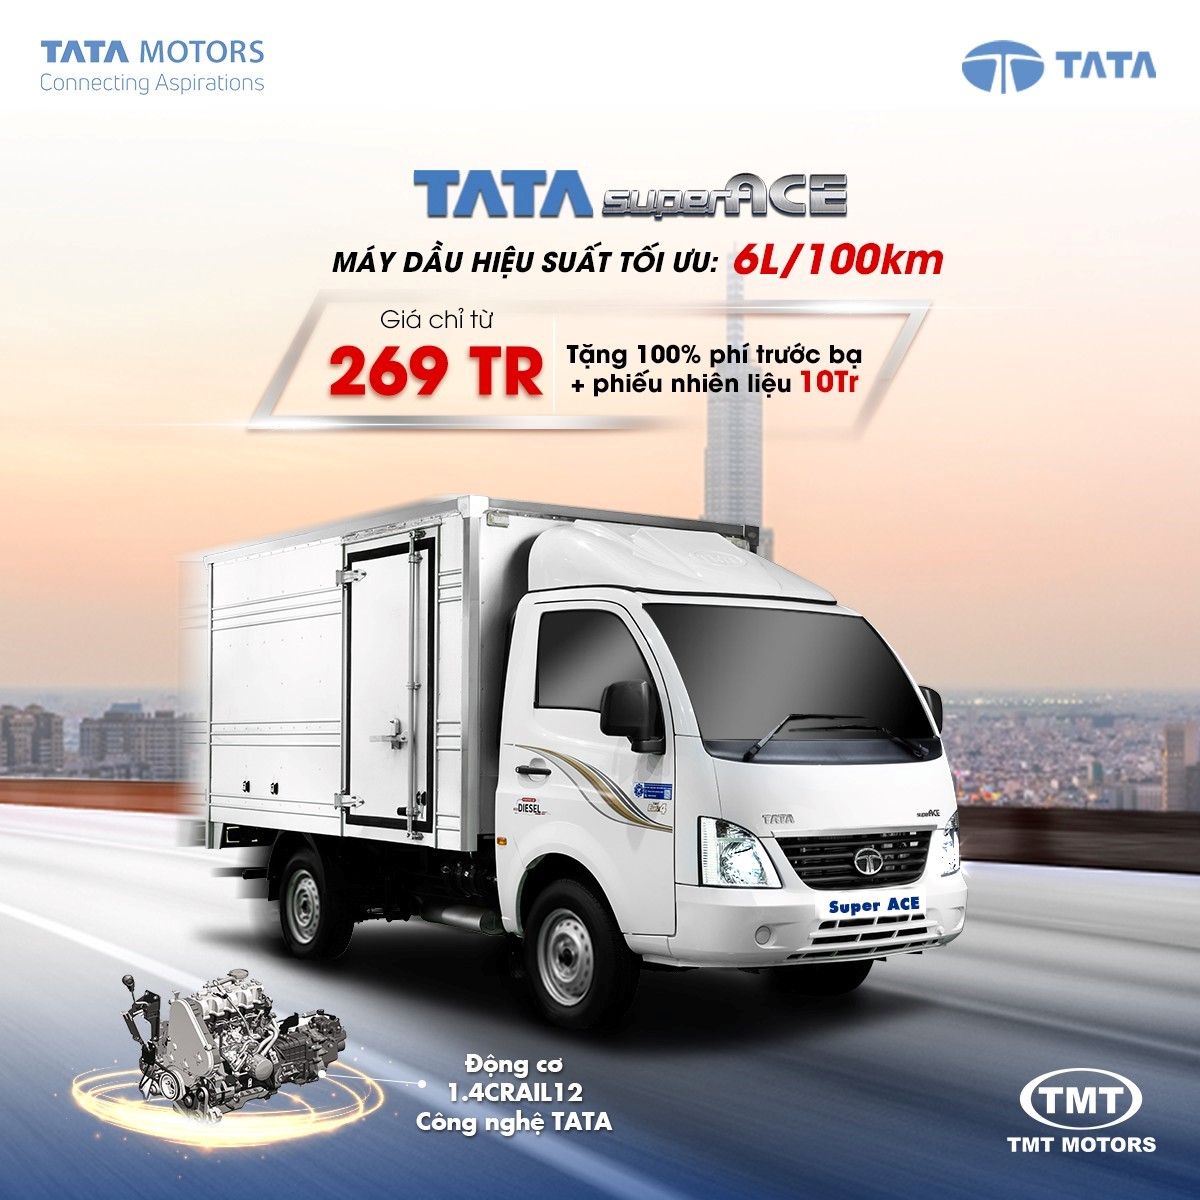 Những ưu điểm khiến TATA superACE nổi bật trên thị trường xe tải - 4